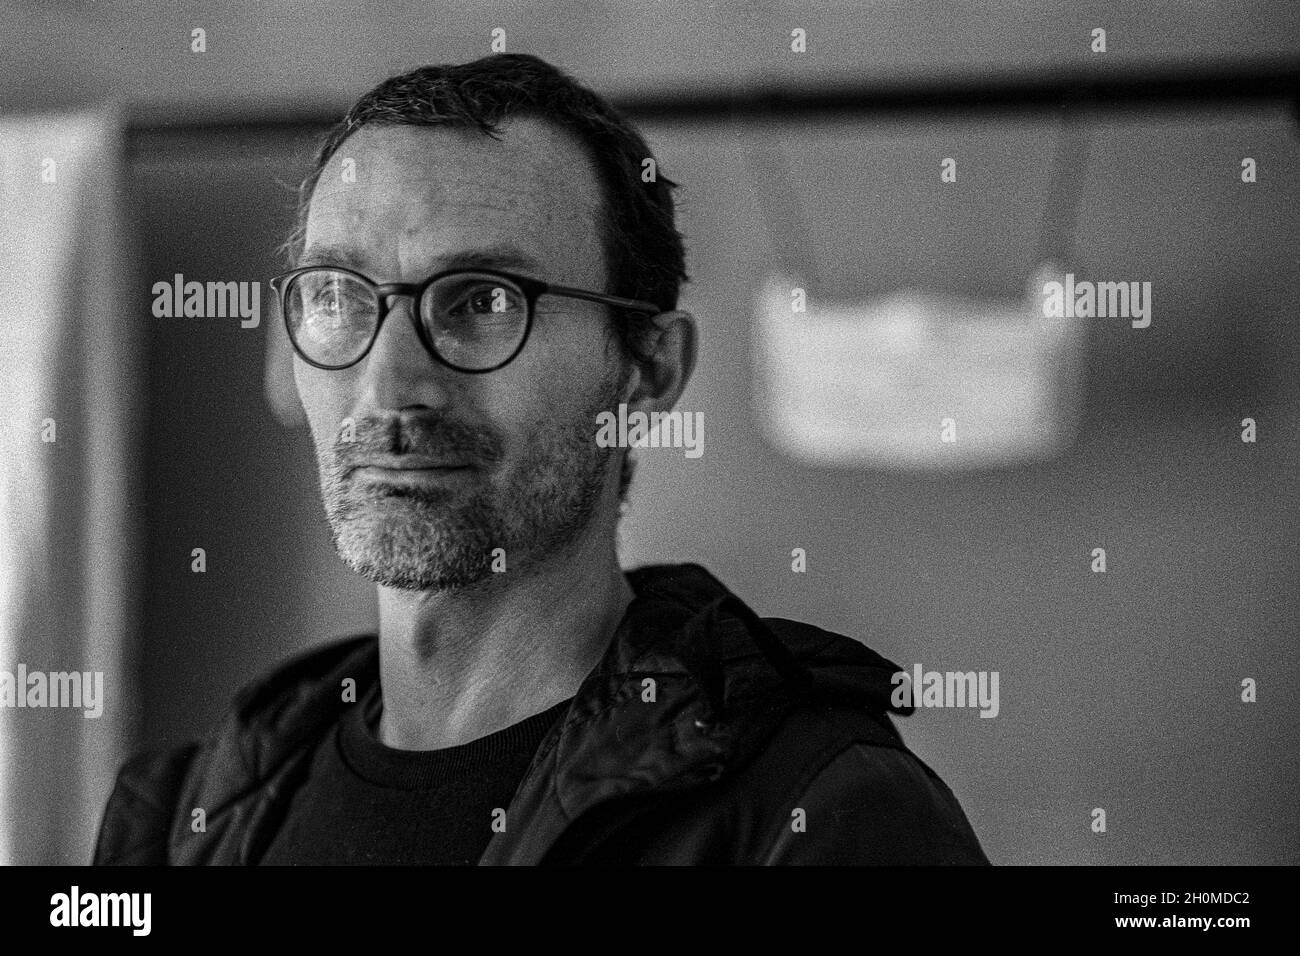 Tilburg, Netherlands. Portrait of man Peter van M in Black & White on Analog Film inside a studio room. Stock Photo